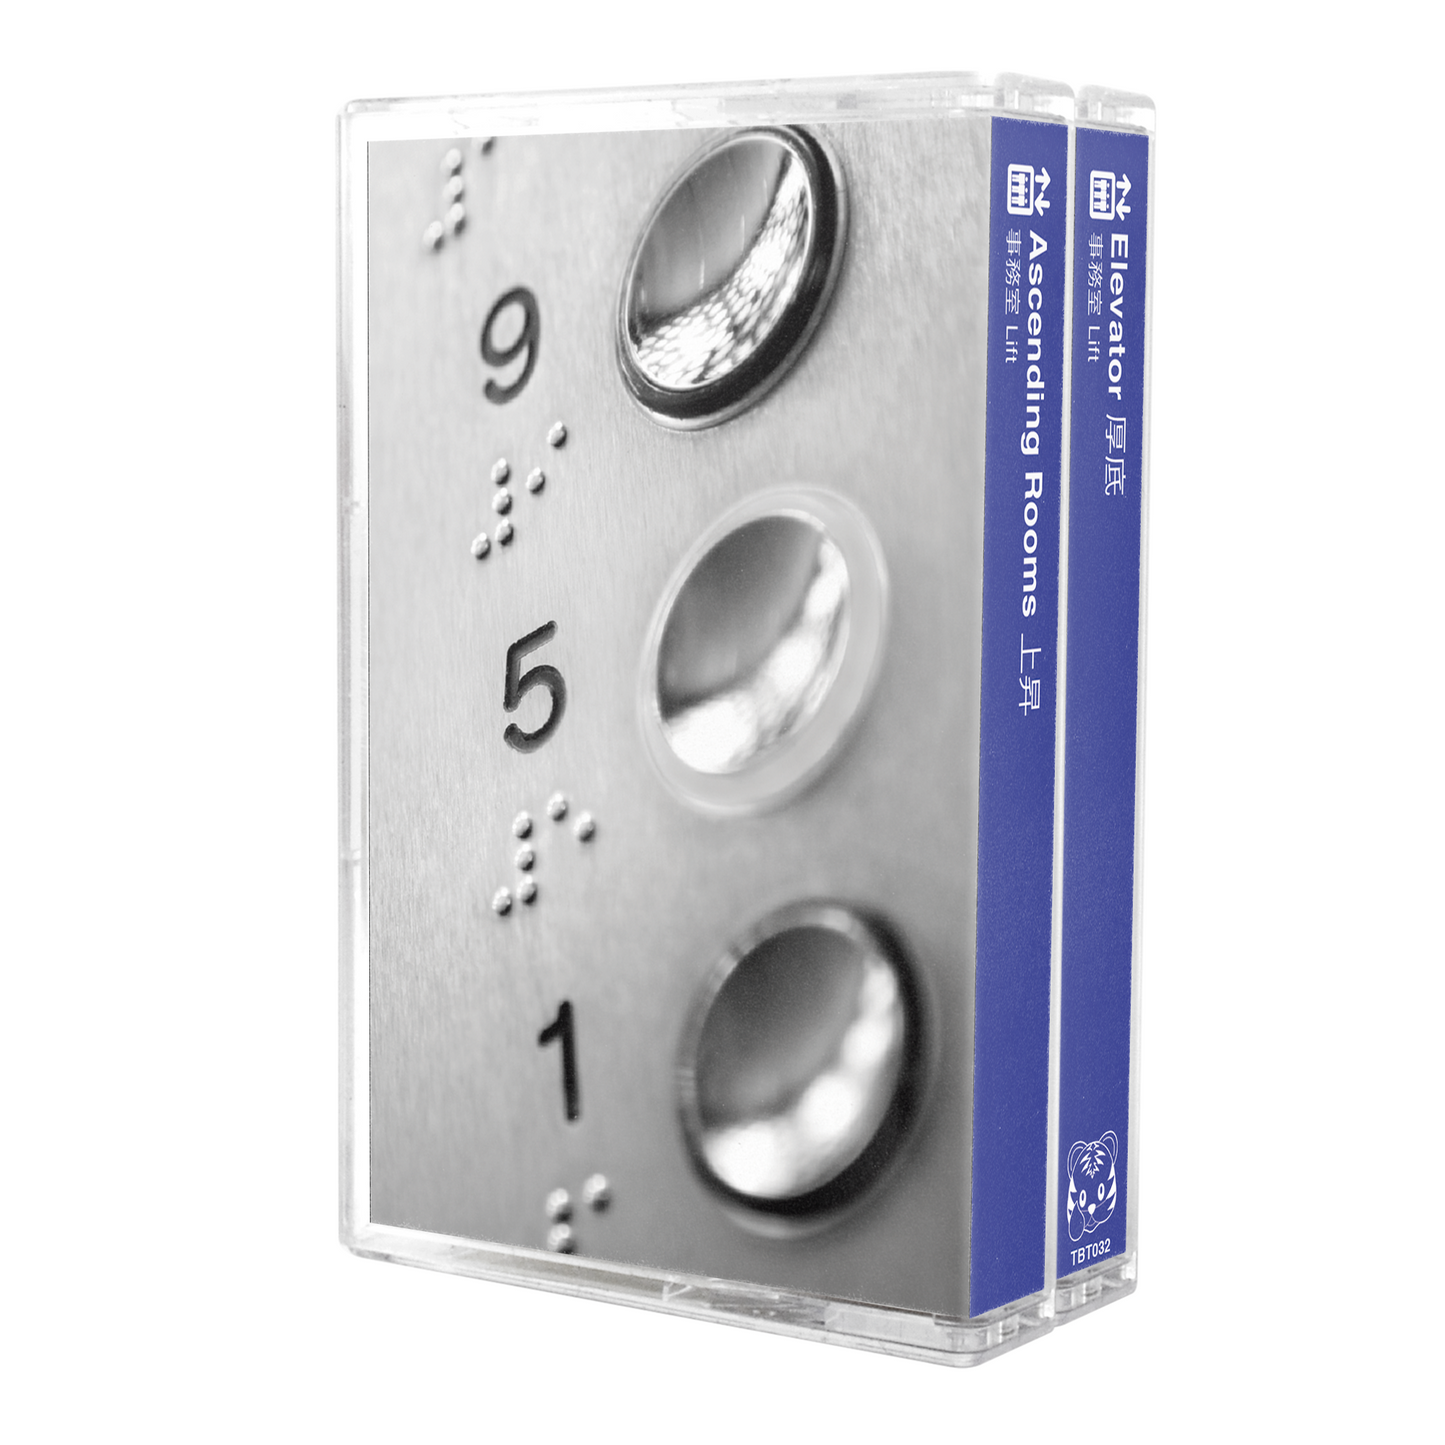 事務室 Lift - "Elevator 厚底 / Ascending Rooms 上昇" Limited Edition 2 Cassette Tape Boxset